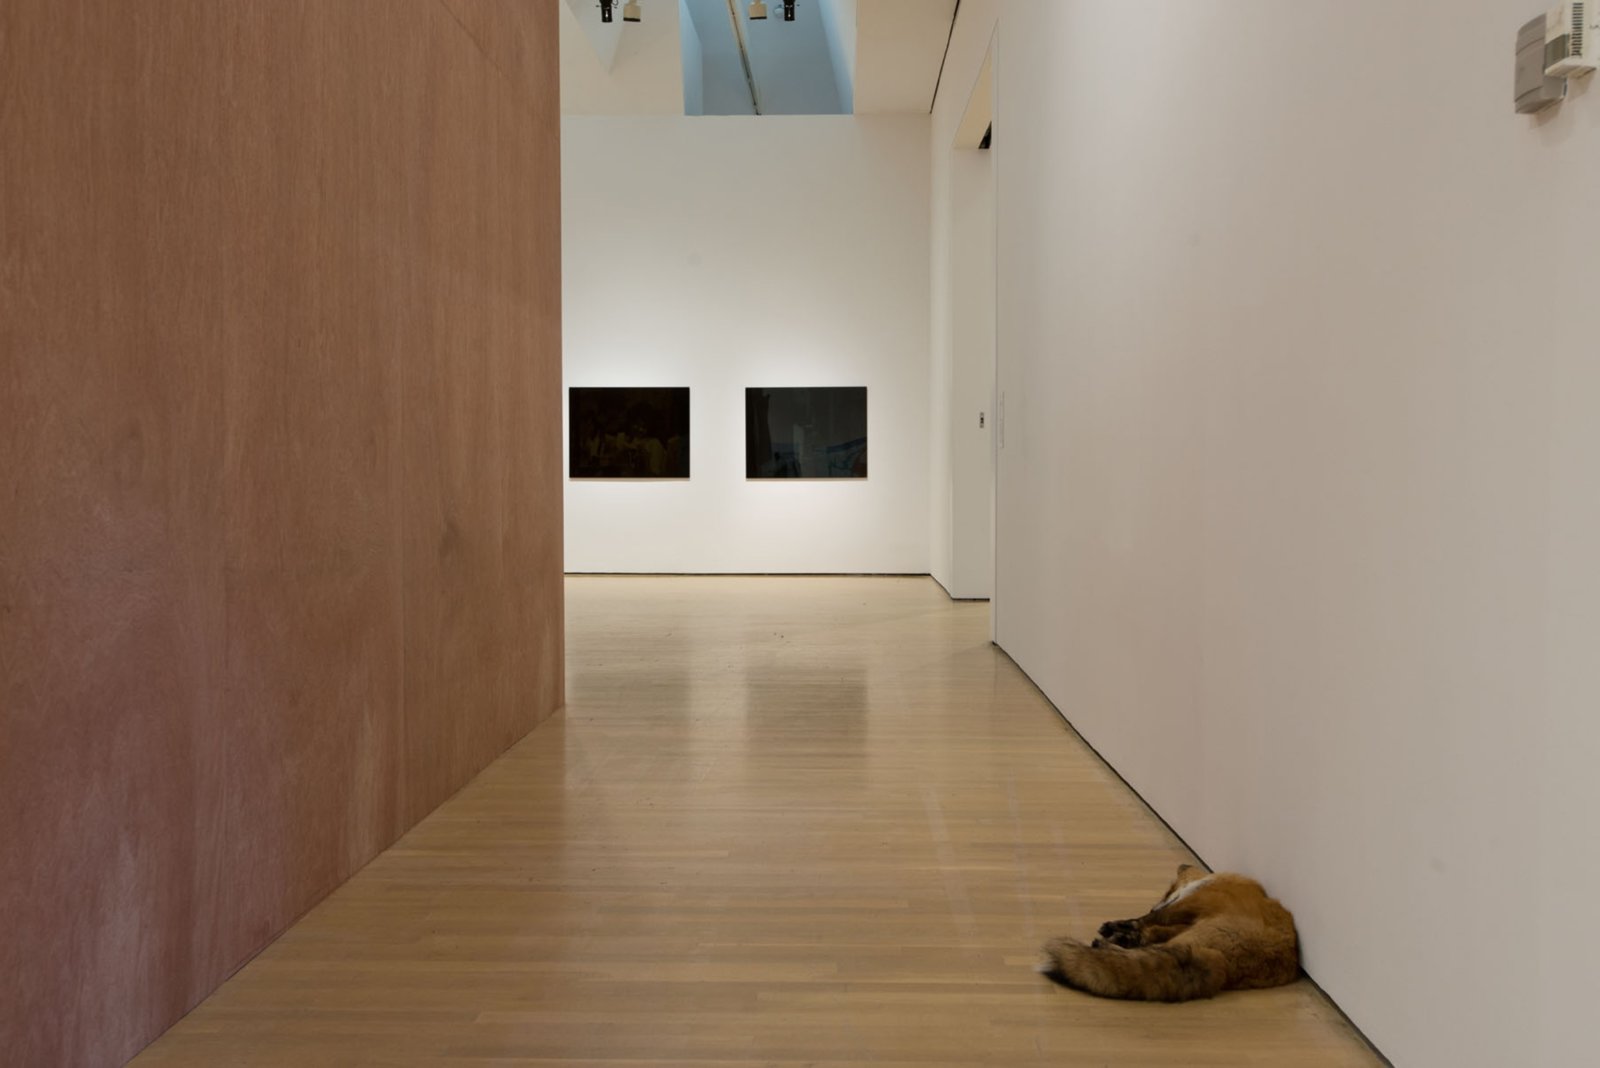 Abbas Akhavan, Fatigues, 2014, taxidermy animals, dimensions variable. Installation view, L’avenir, La Biennale de Montréal 2014, Musée d’art contemporain, Montreal, Canada